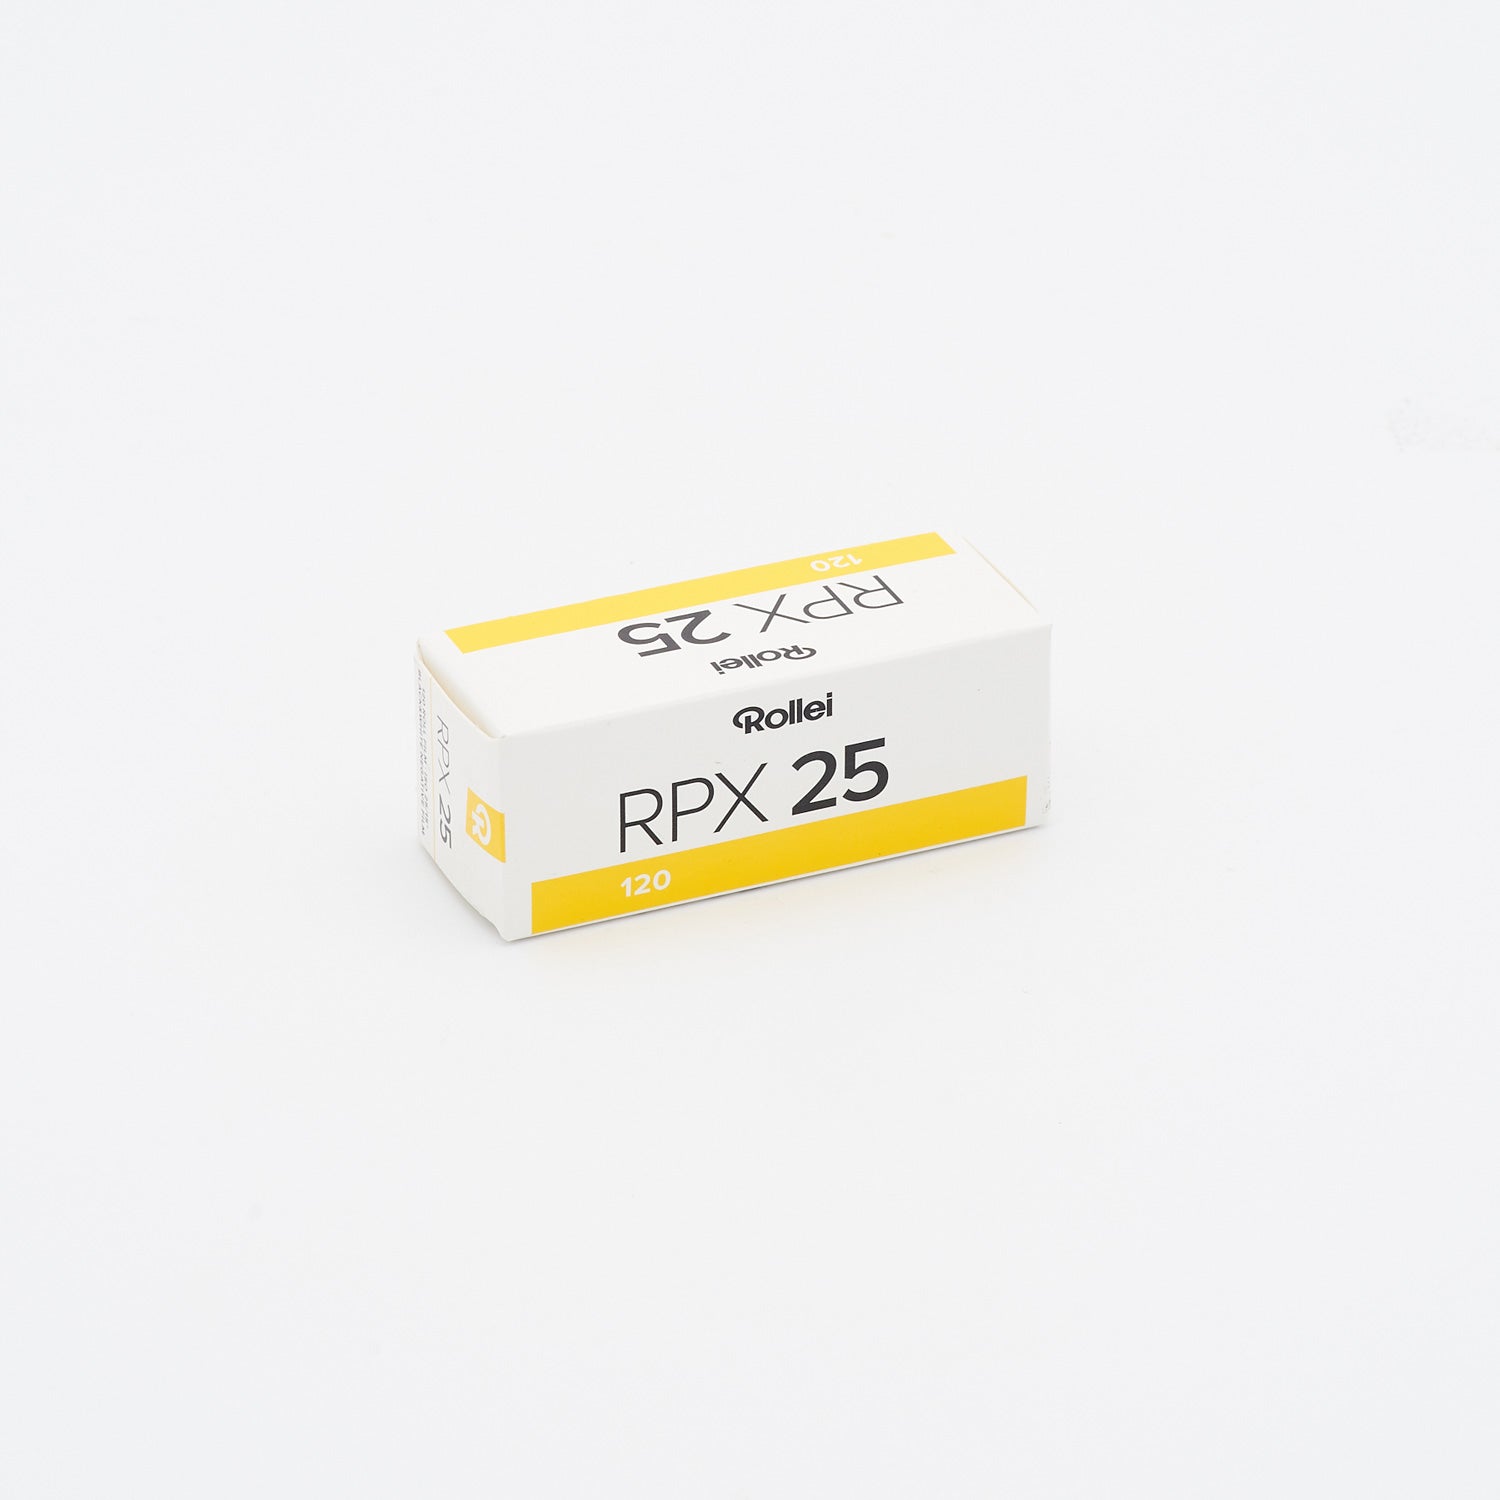 Rollei RPX 25 SW-Negativfilm 120 (Mittelformat)